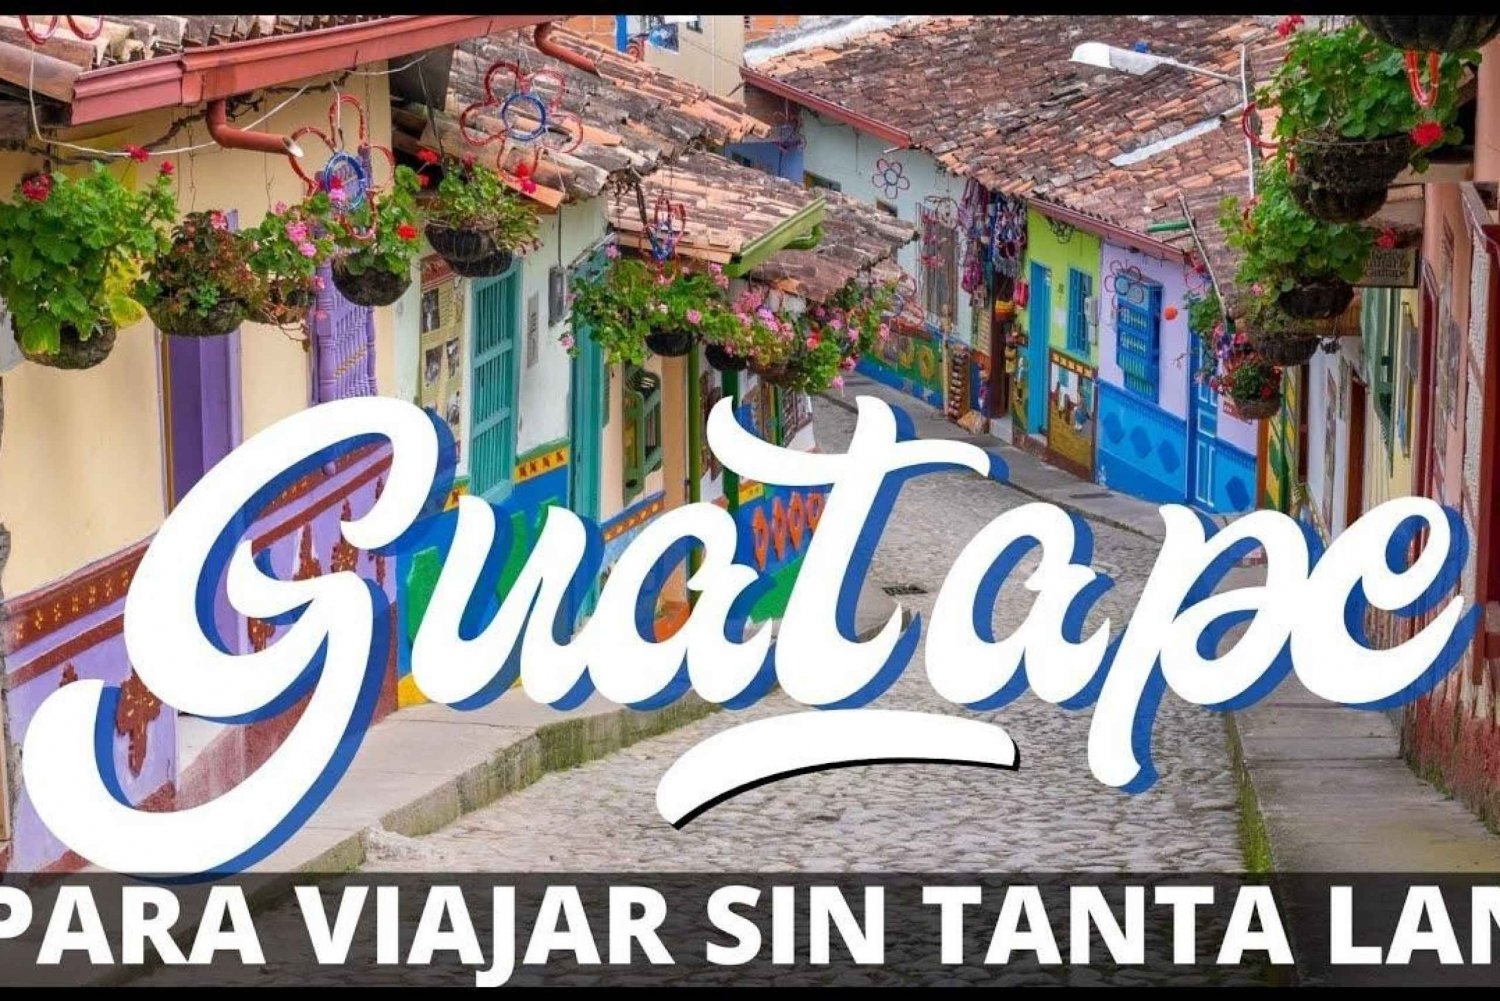 Medellin to Guatape Cultural Tour